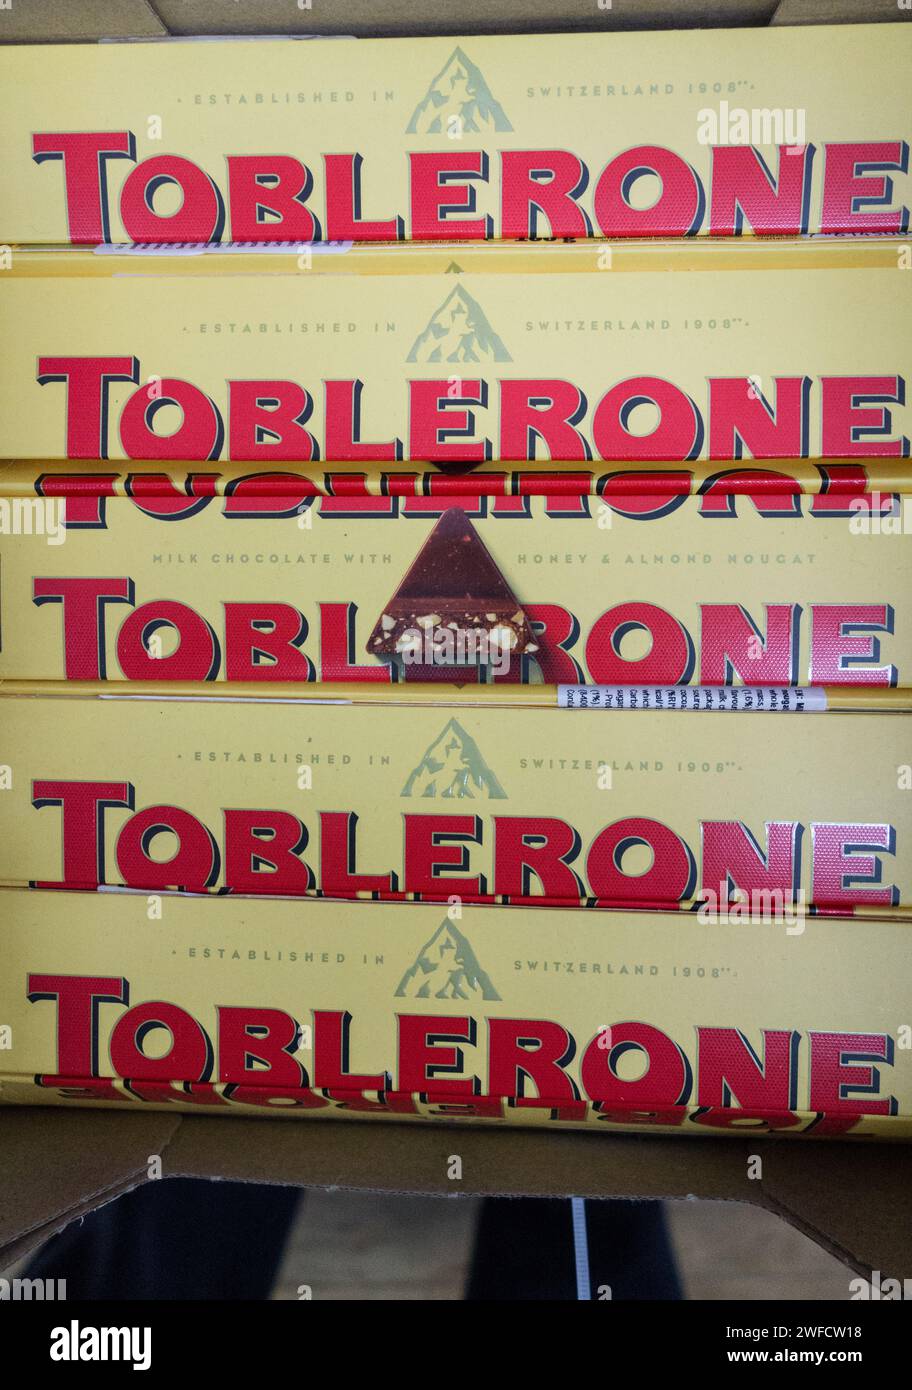 Toblerone Alpine Mountain immagine e marchio sulla confezione del marchio svizzero di cioccolato di proprietà di Mondelez International e prodotto a Berna, Svizzera Foto Stock